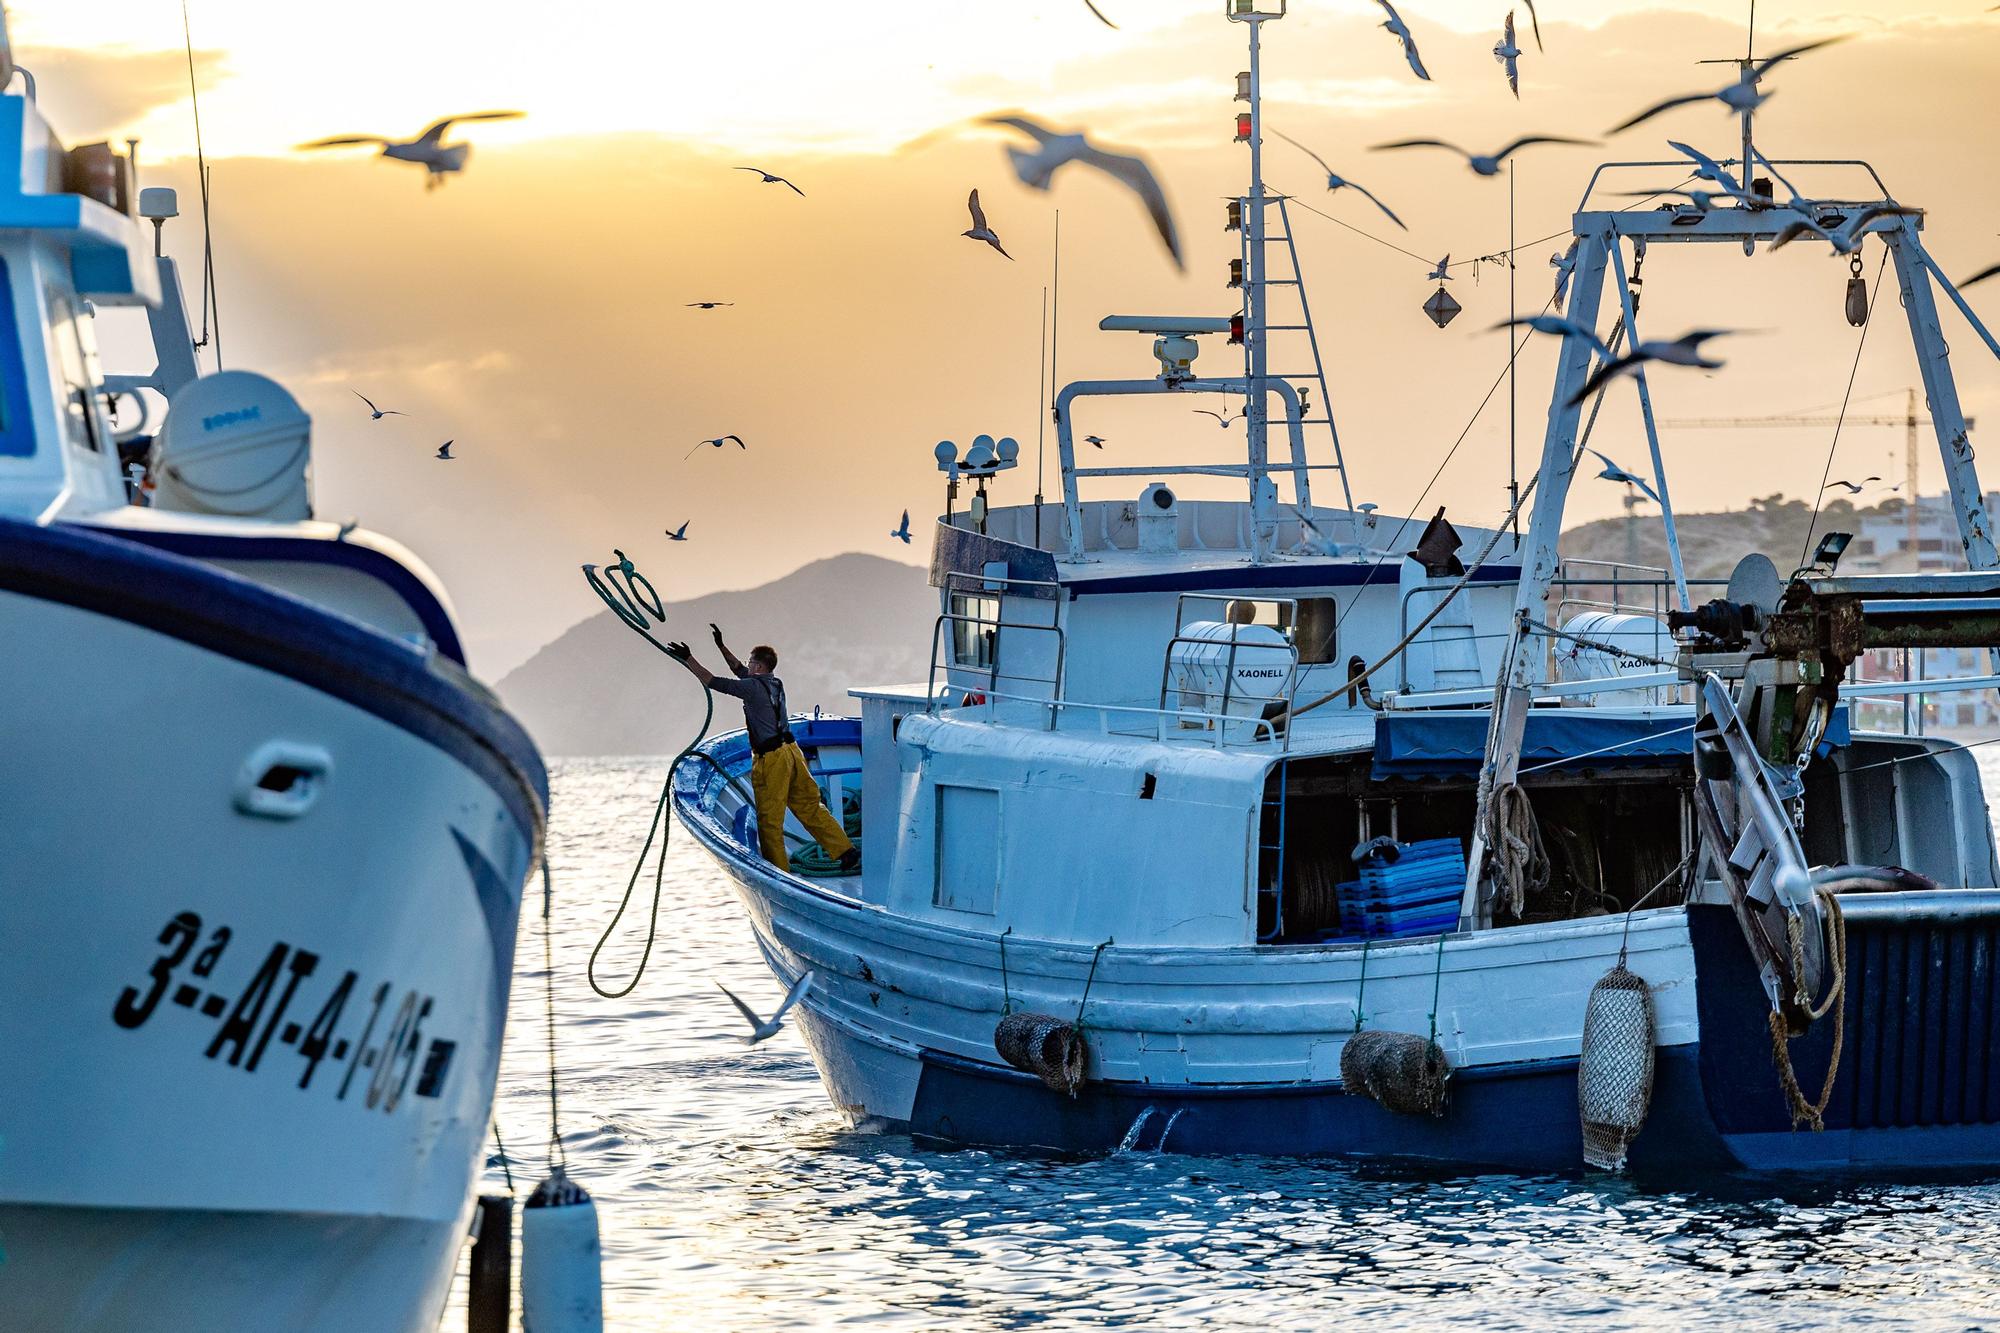 19/11/2021. Rutas sobre la pesca tradicional como reclamo turístico en La Vila. El Ayuntamiento inicia un proyecto para dar a conocer este oficio marinero y atraer visitantes